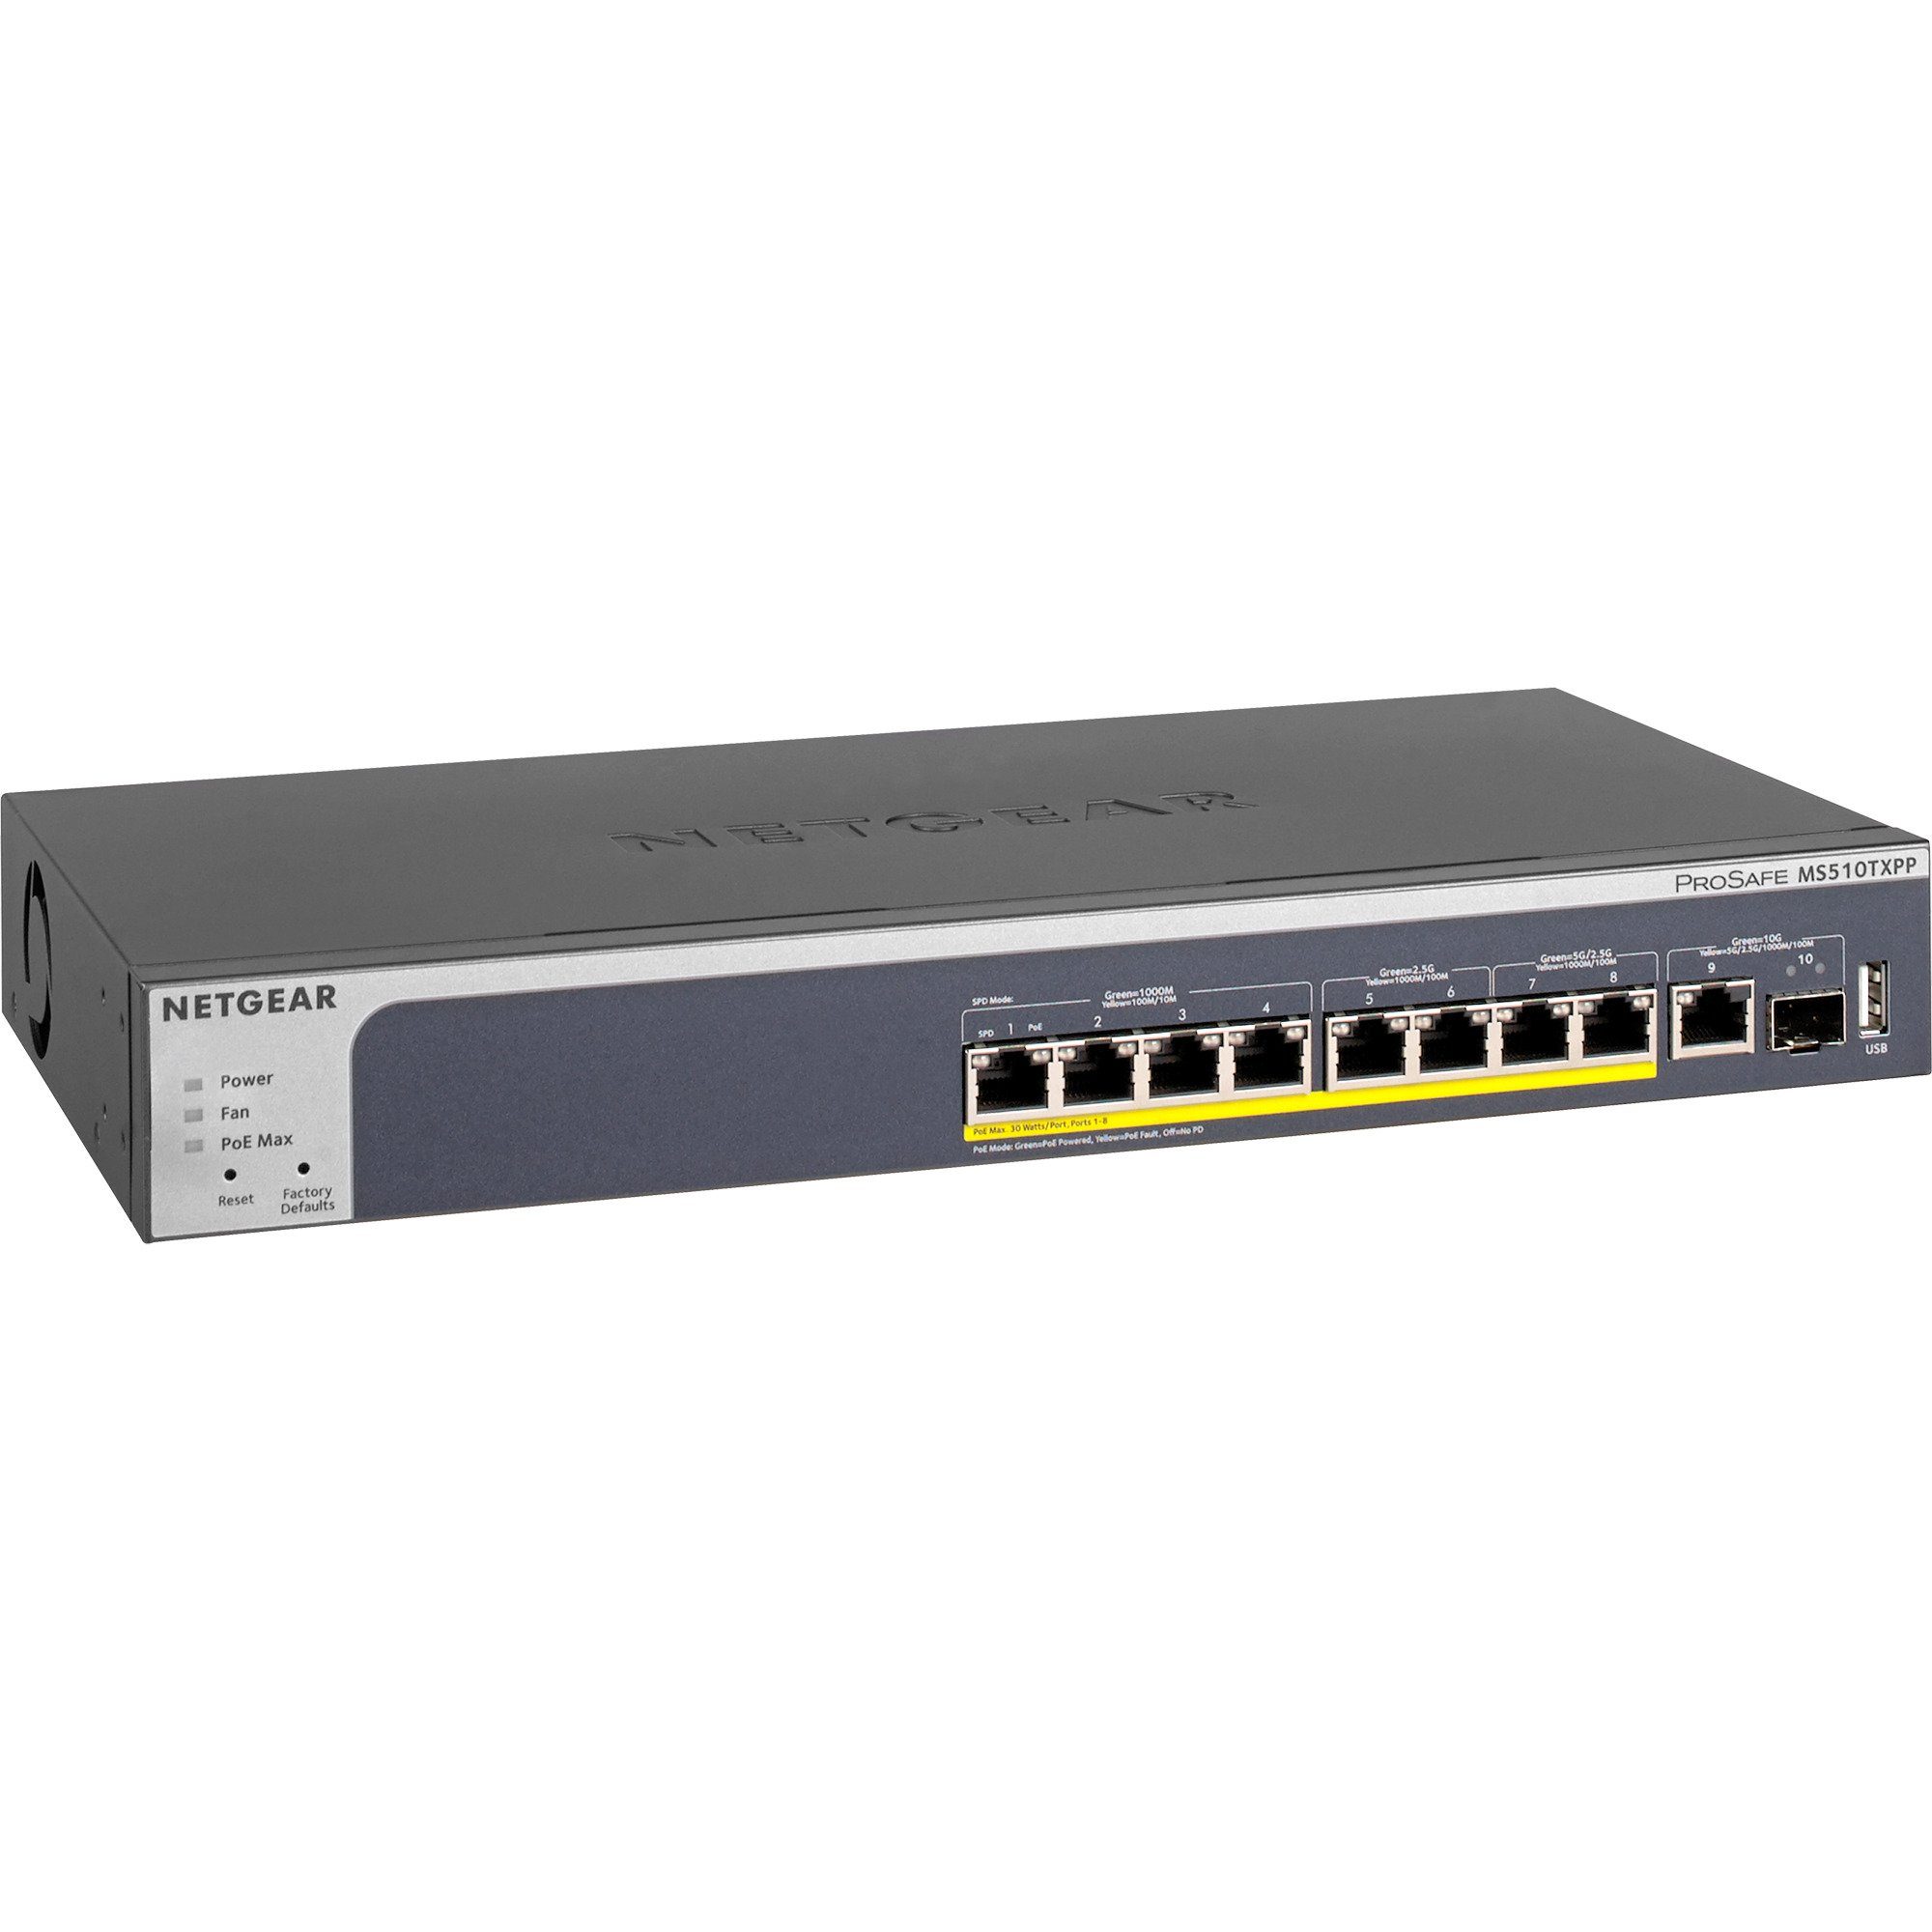 Switch, Netzwerk-Switch MS510TXPP, Netgear (Multi-Gigabit, SFP+, NETGEAR